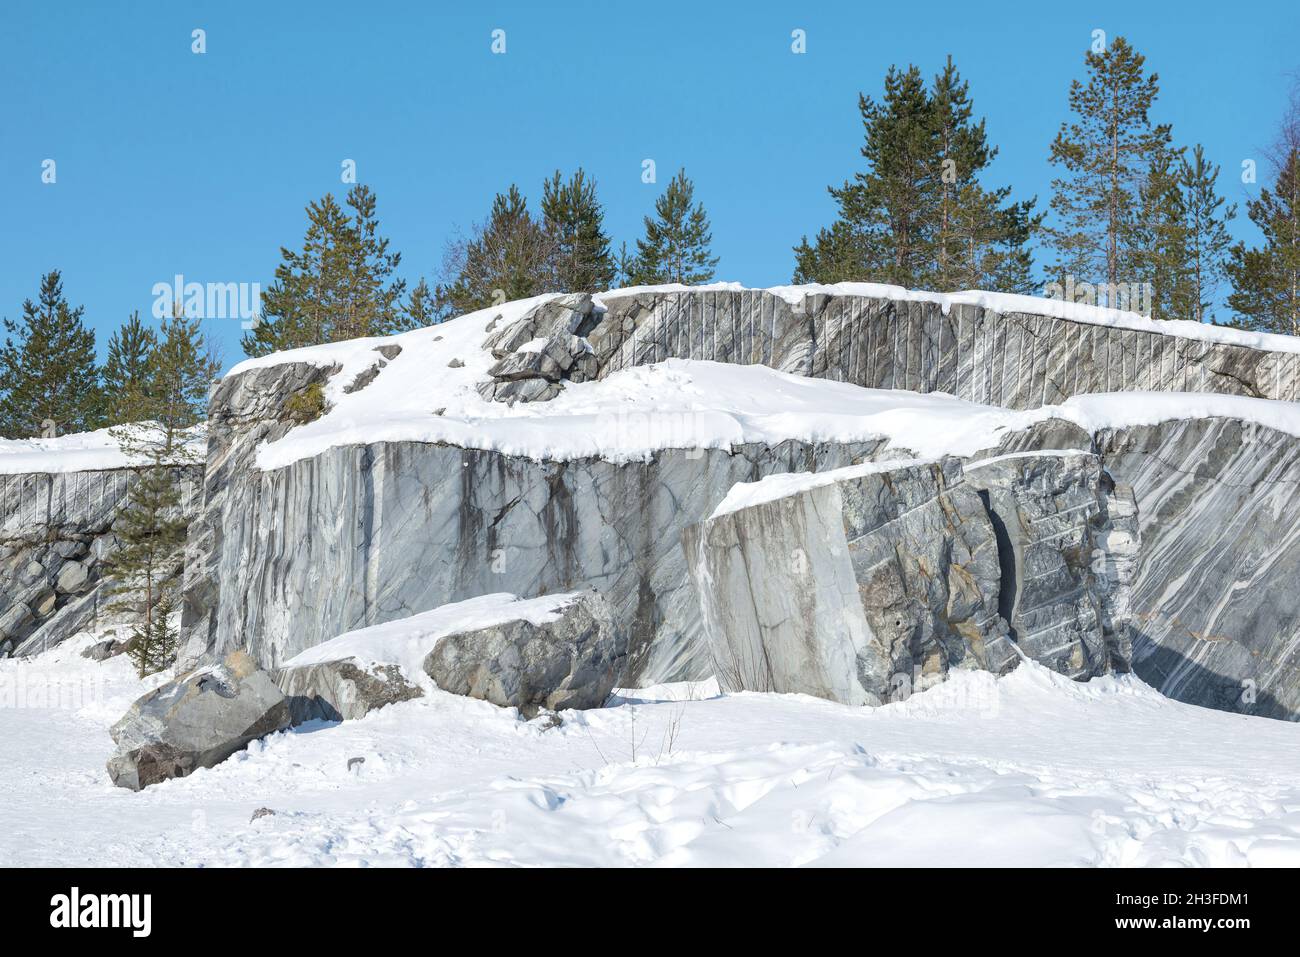 Hiver dans une vieille carrière de marbre.Ruskeala Mountain Park.Carélie, Russie Banque D'Images